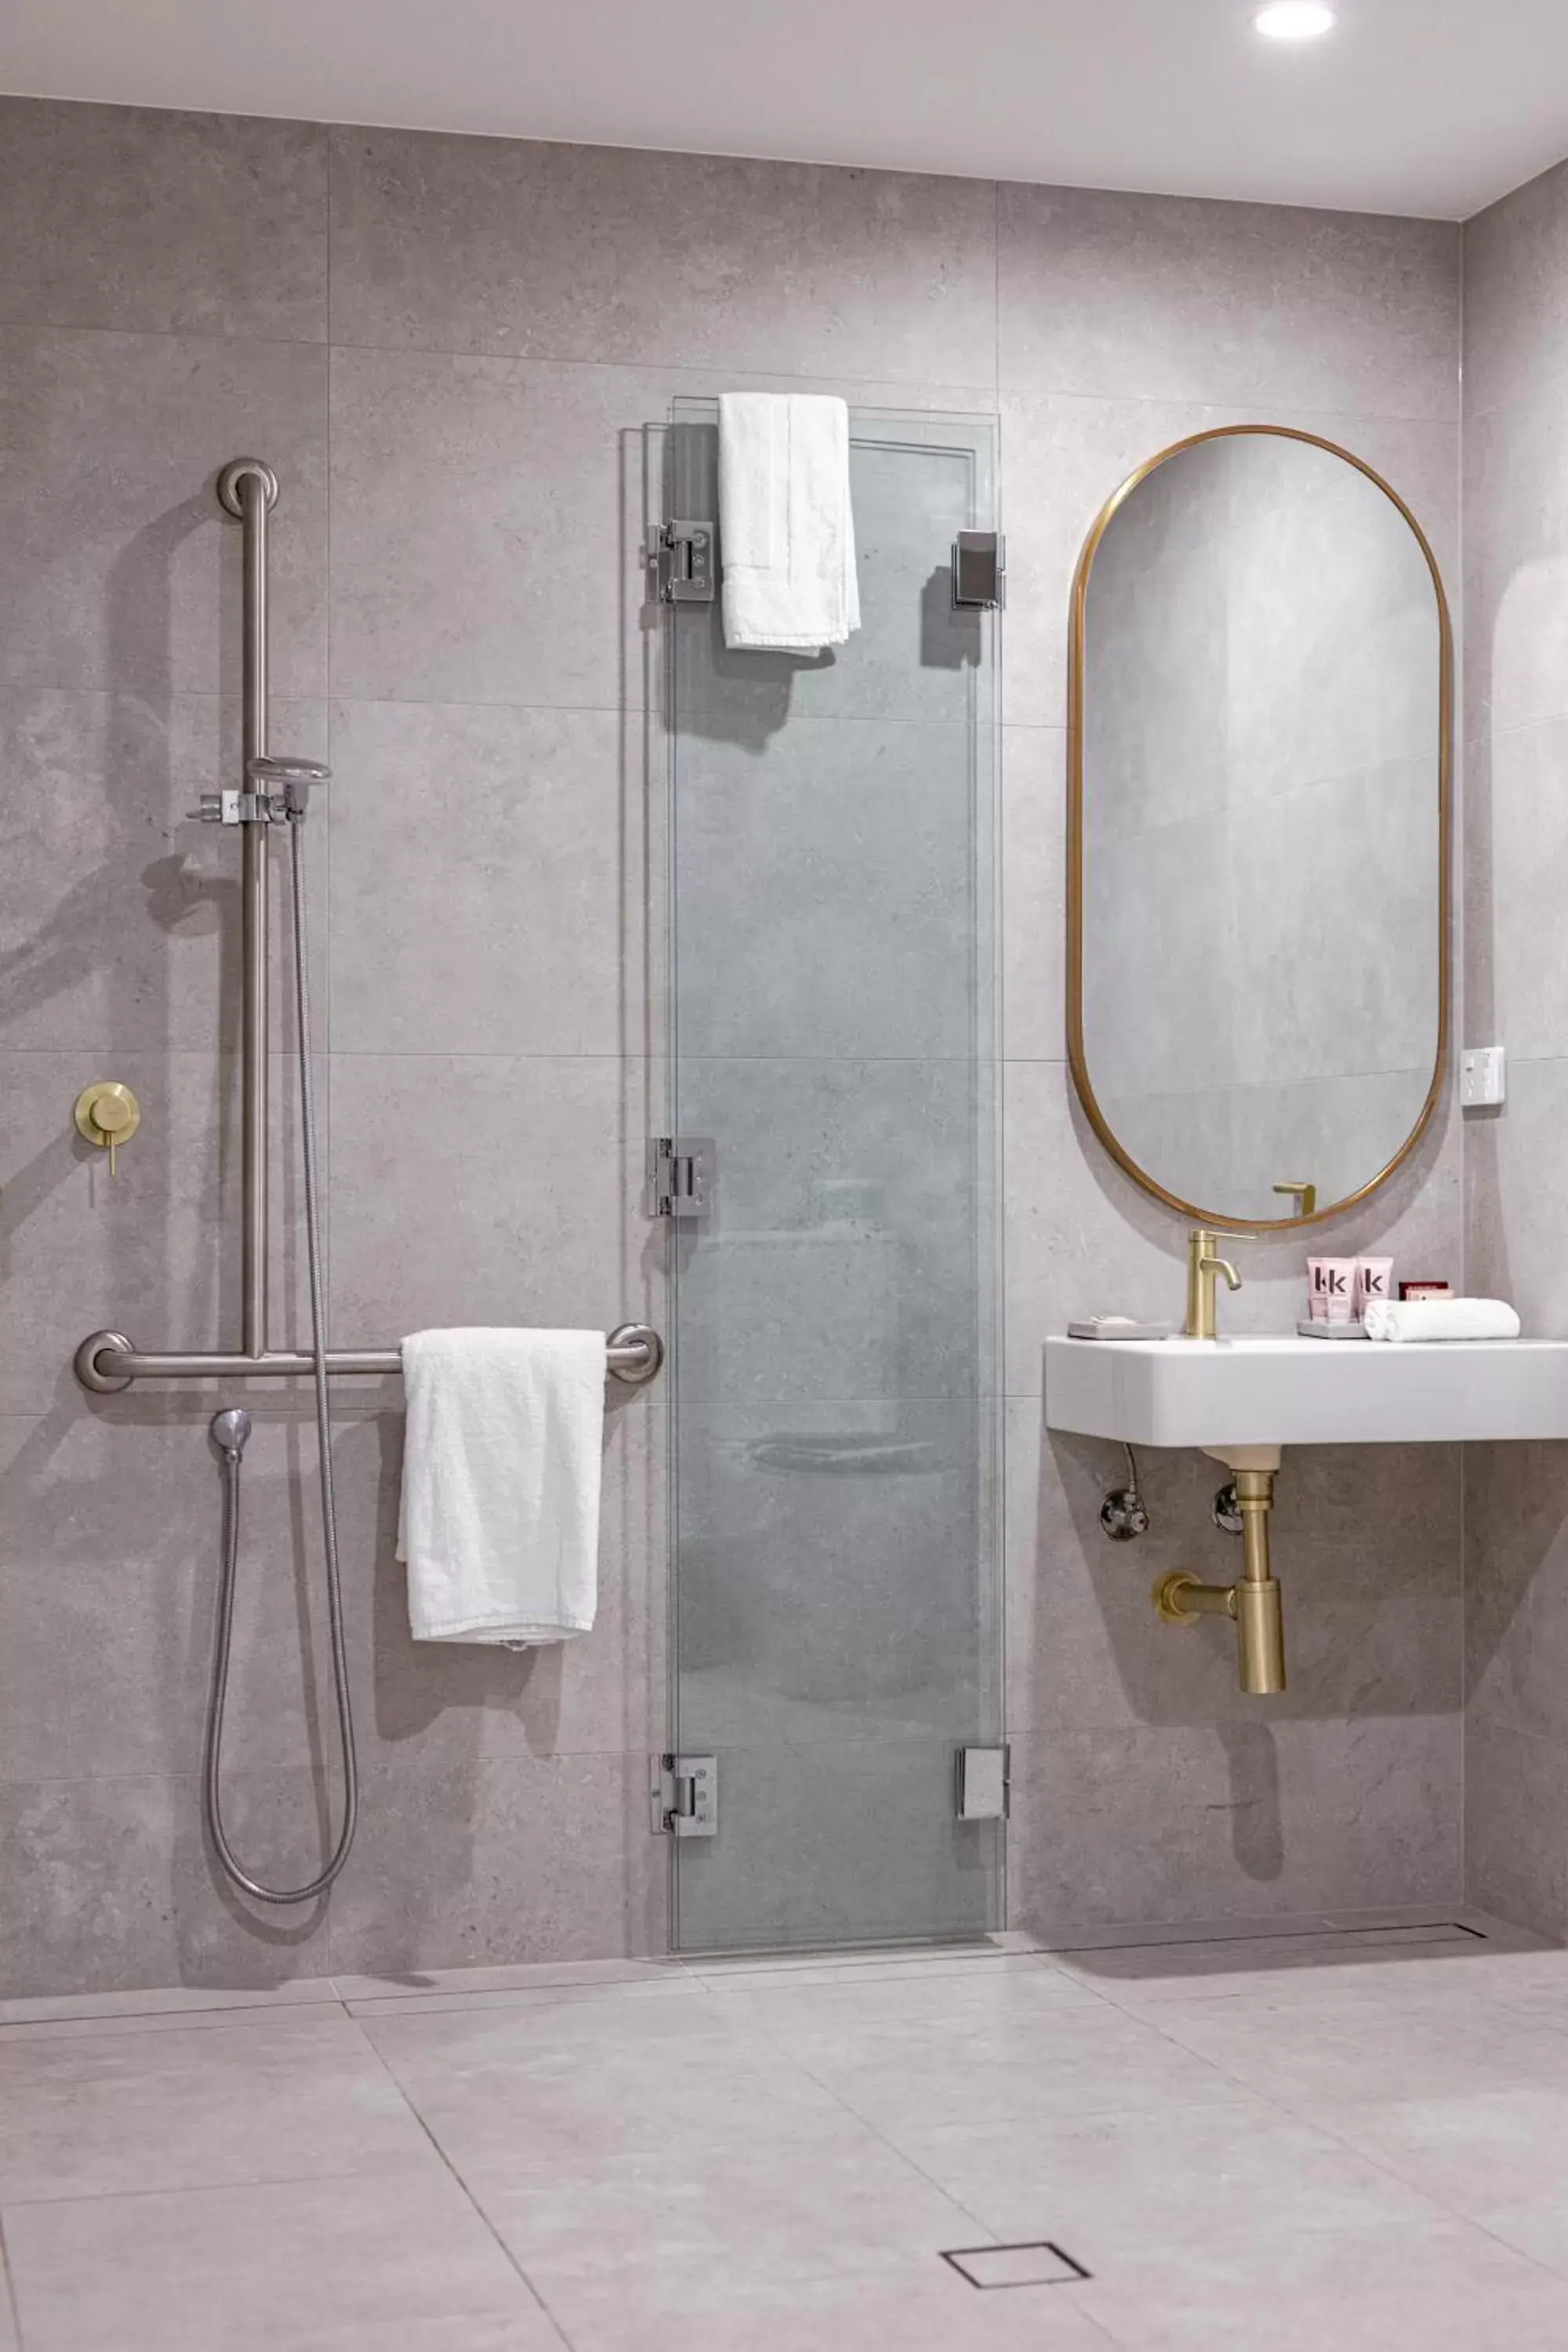 Shower, Bathroom in Astina Suites, Penrith